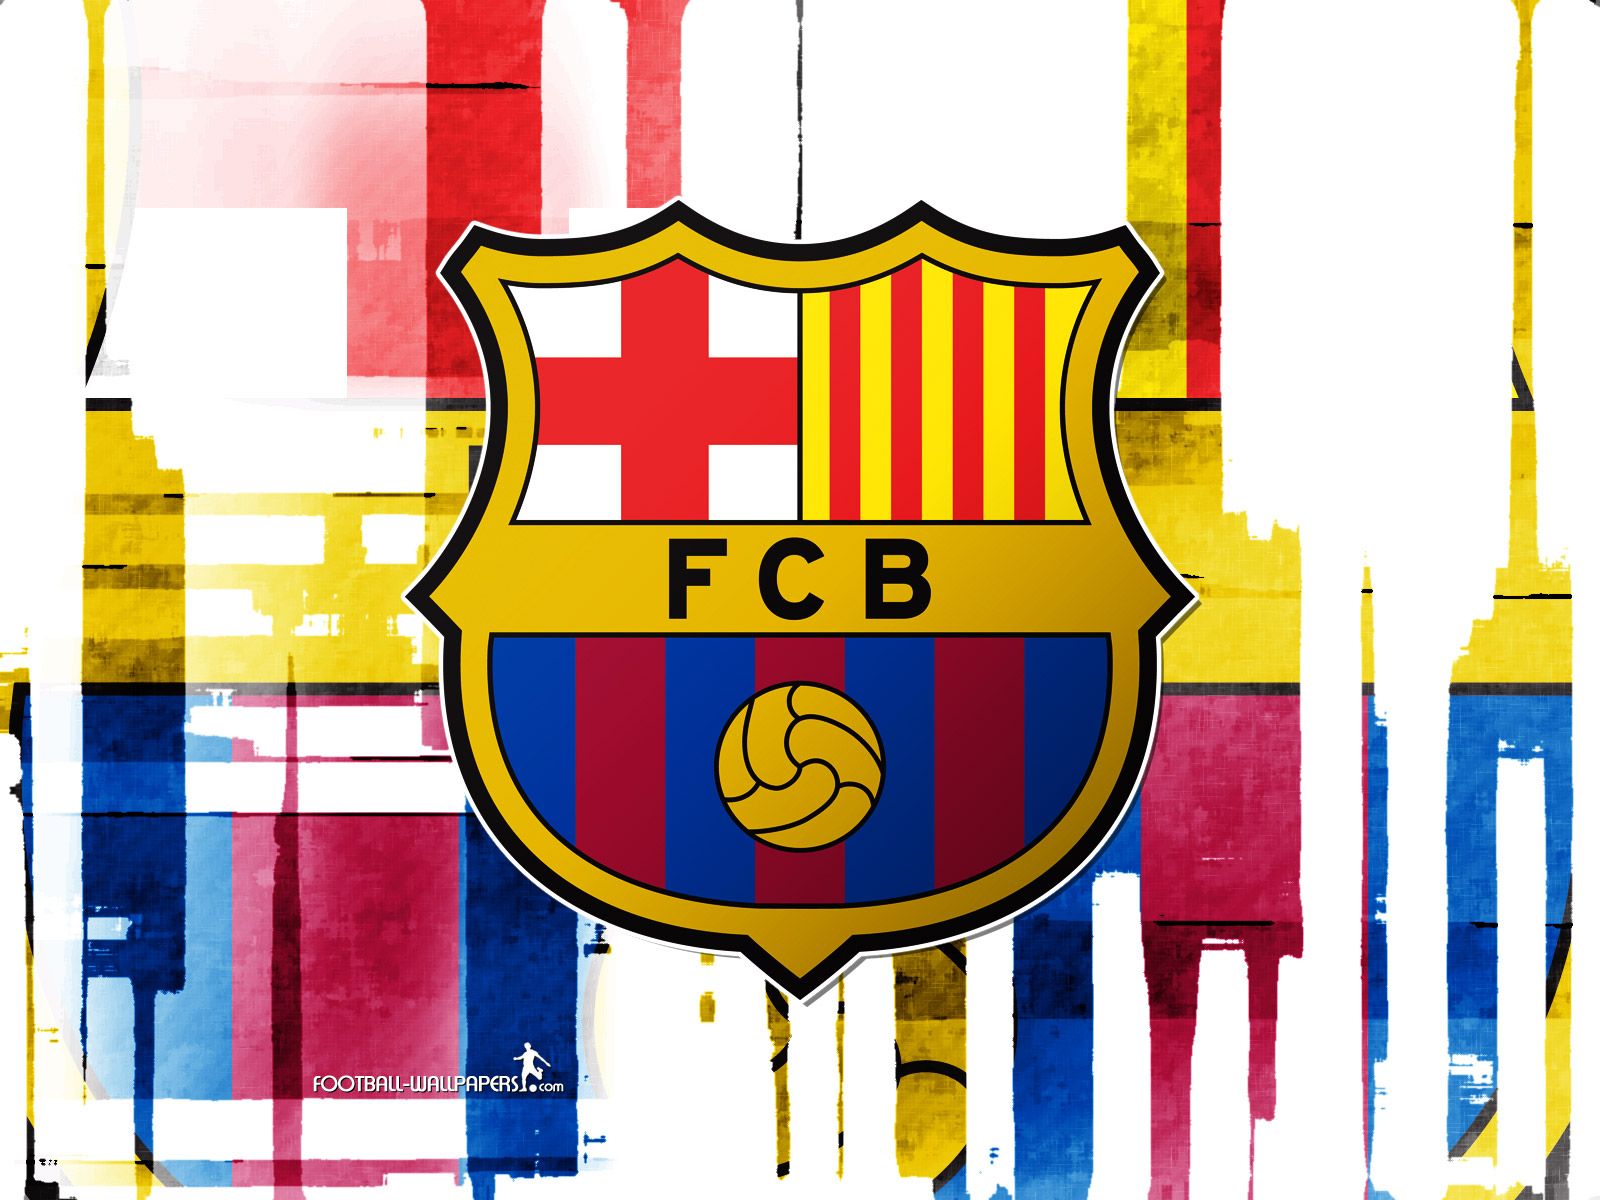 Fondos de pantalla del FC Barcelona - fondo de pantalla de fc barcelona (484407) - fanpop